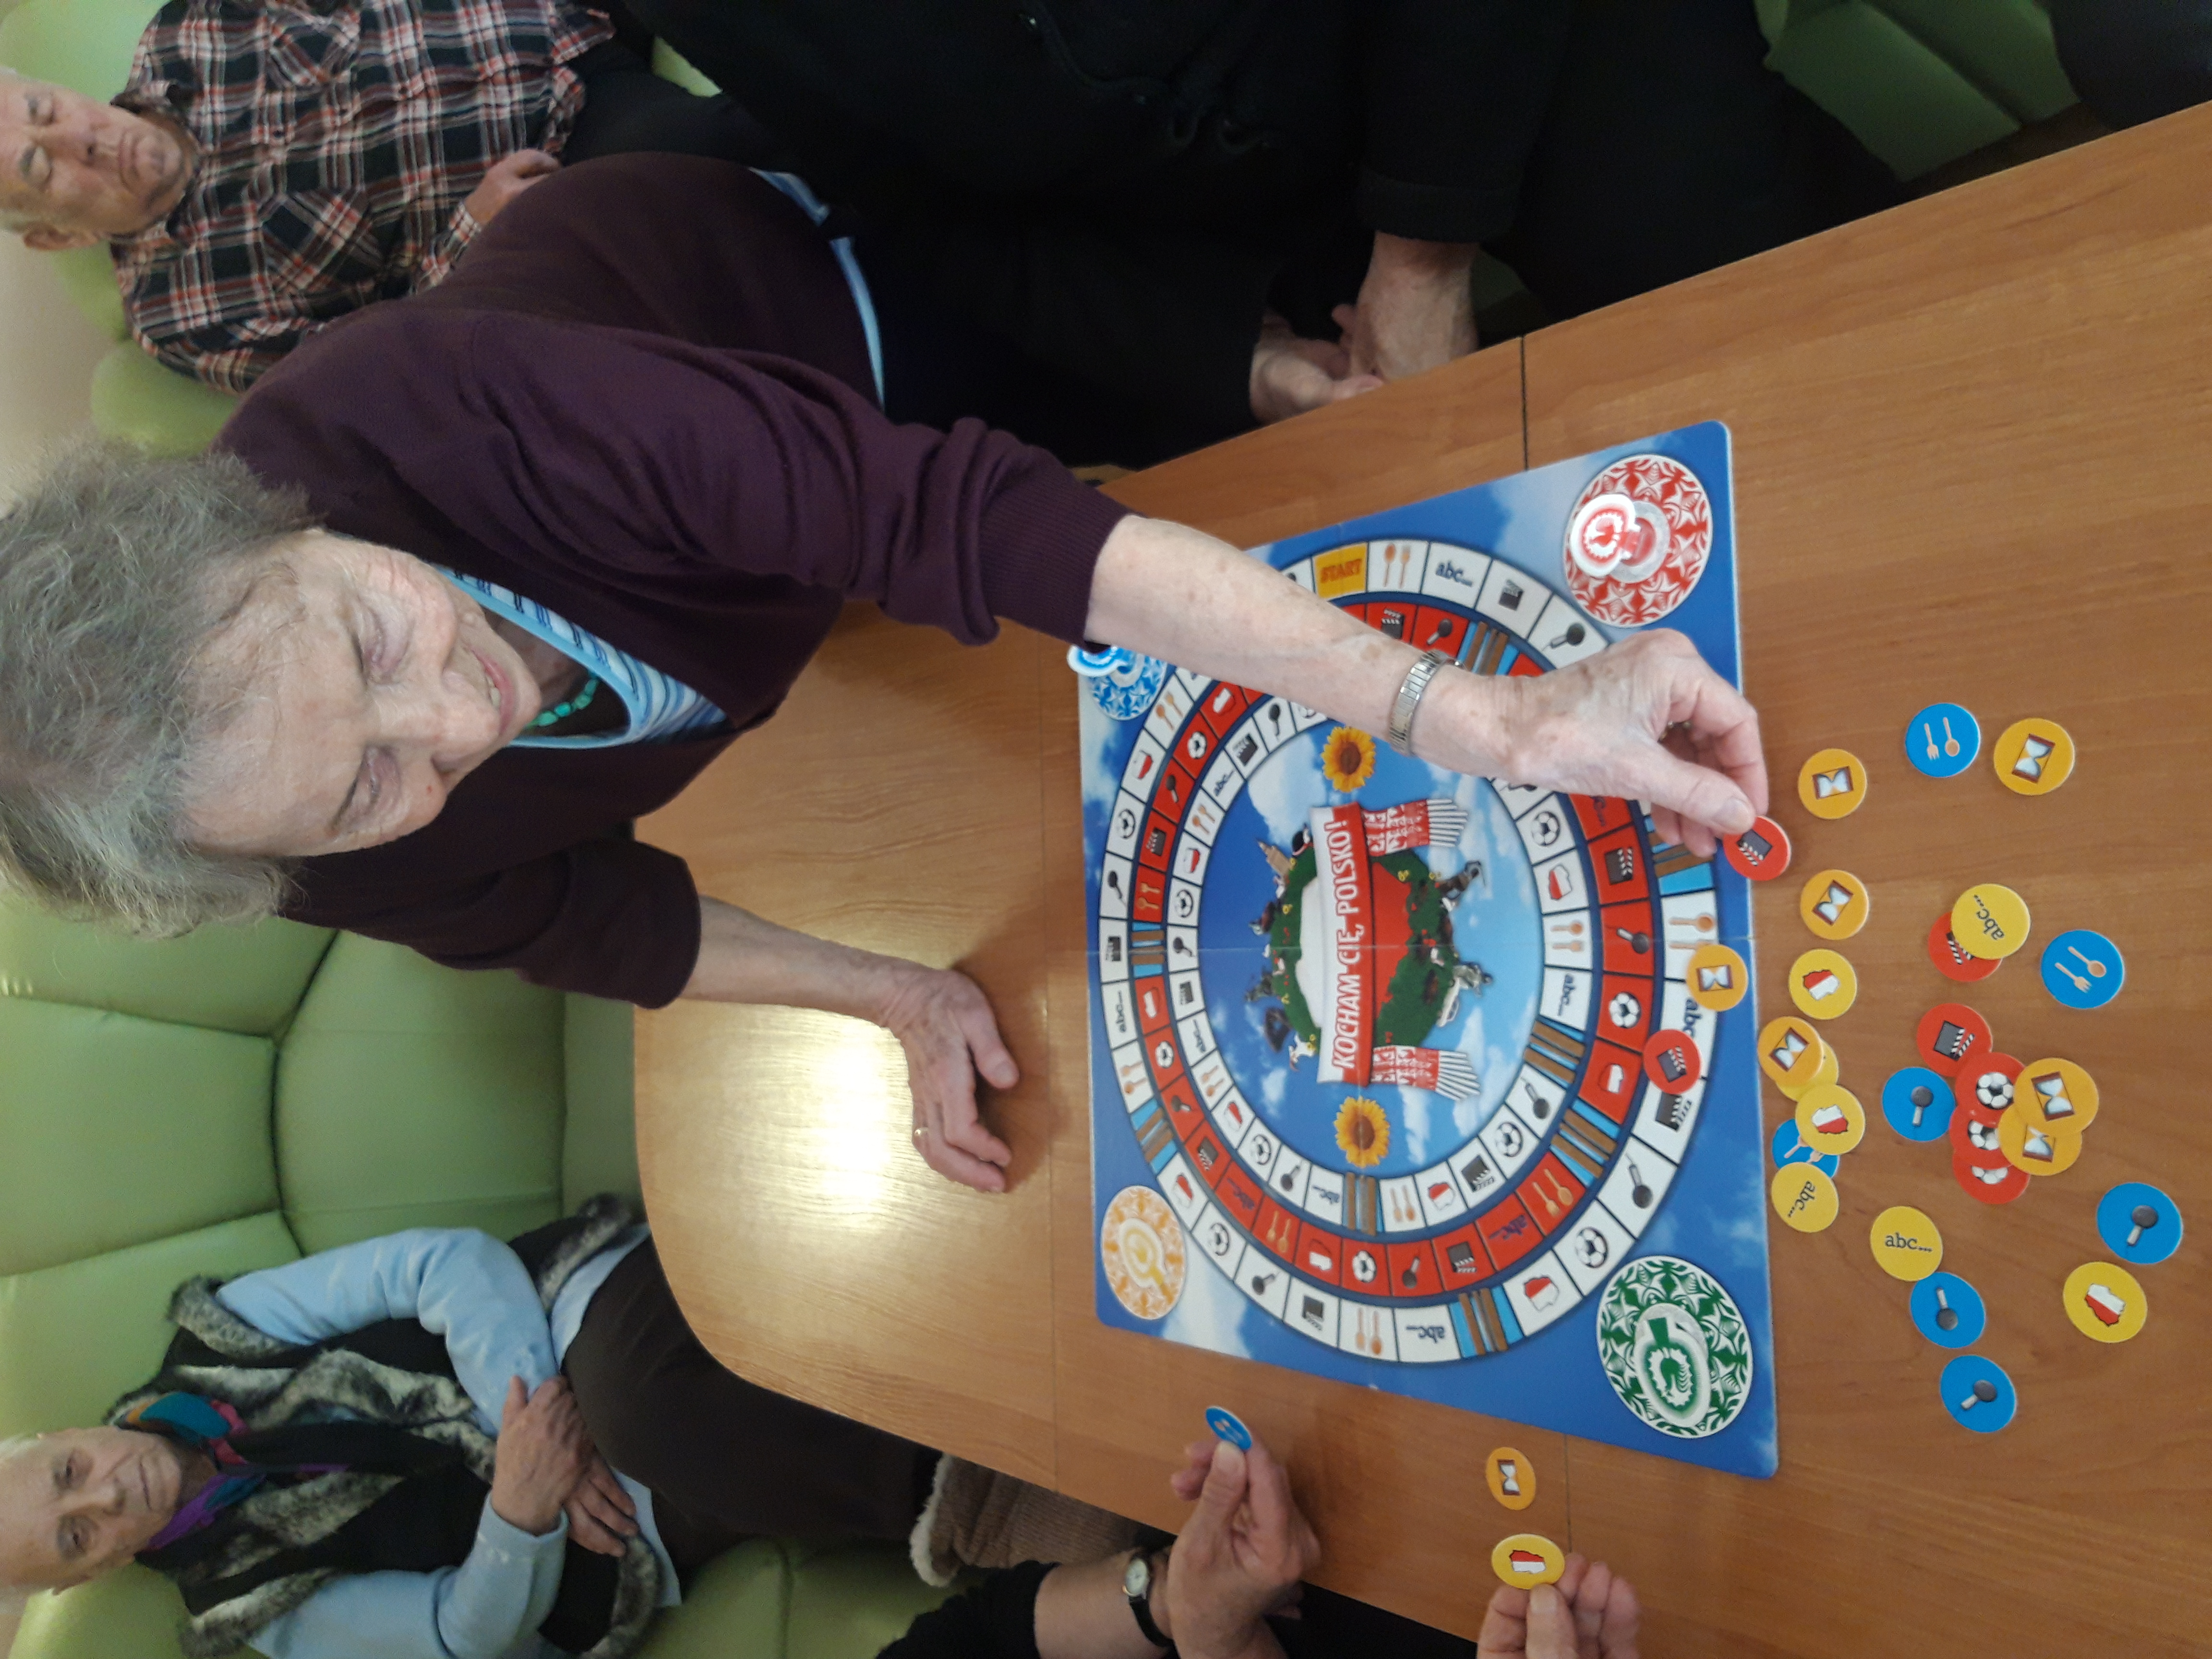 Seniorka opiera się ręką na stole, na którym leży gra planszowa, w drugiej dłoni trzyma żeton do gry